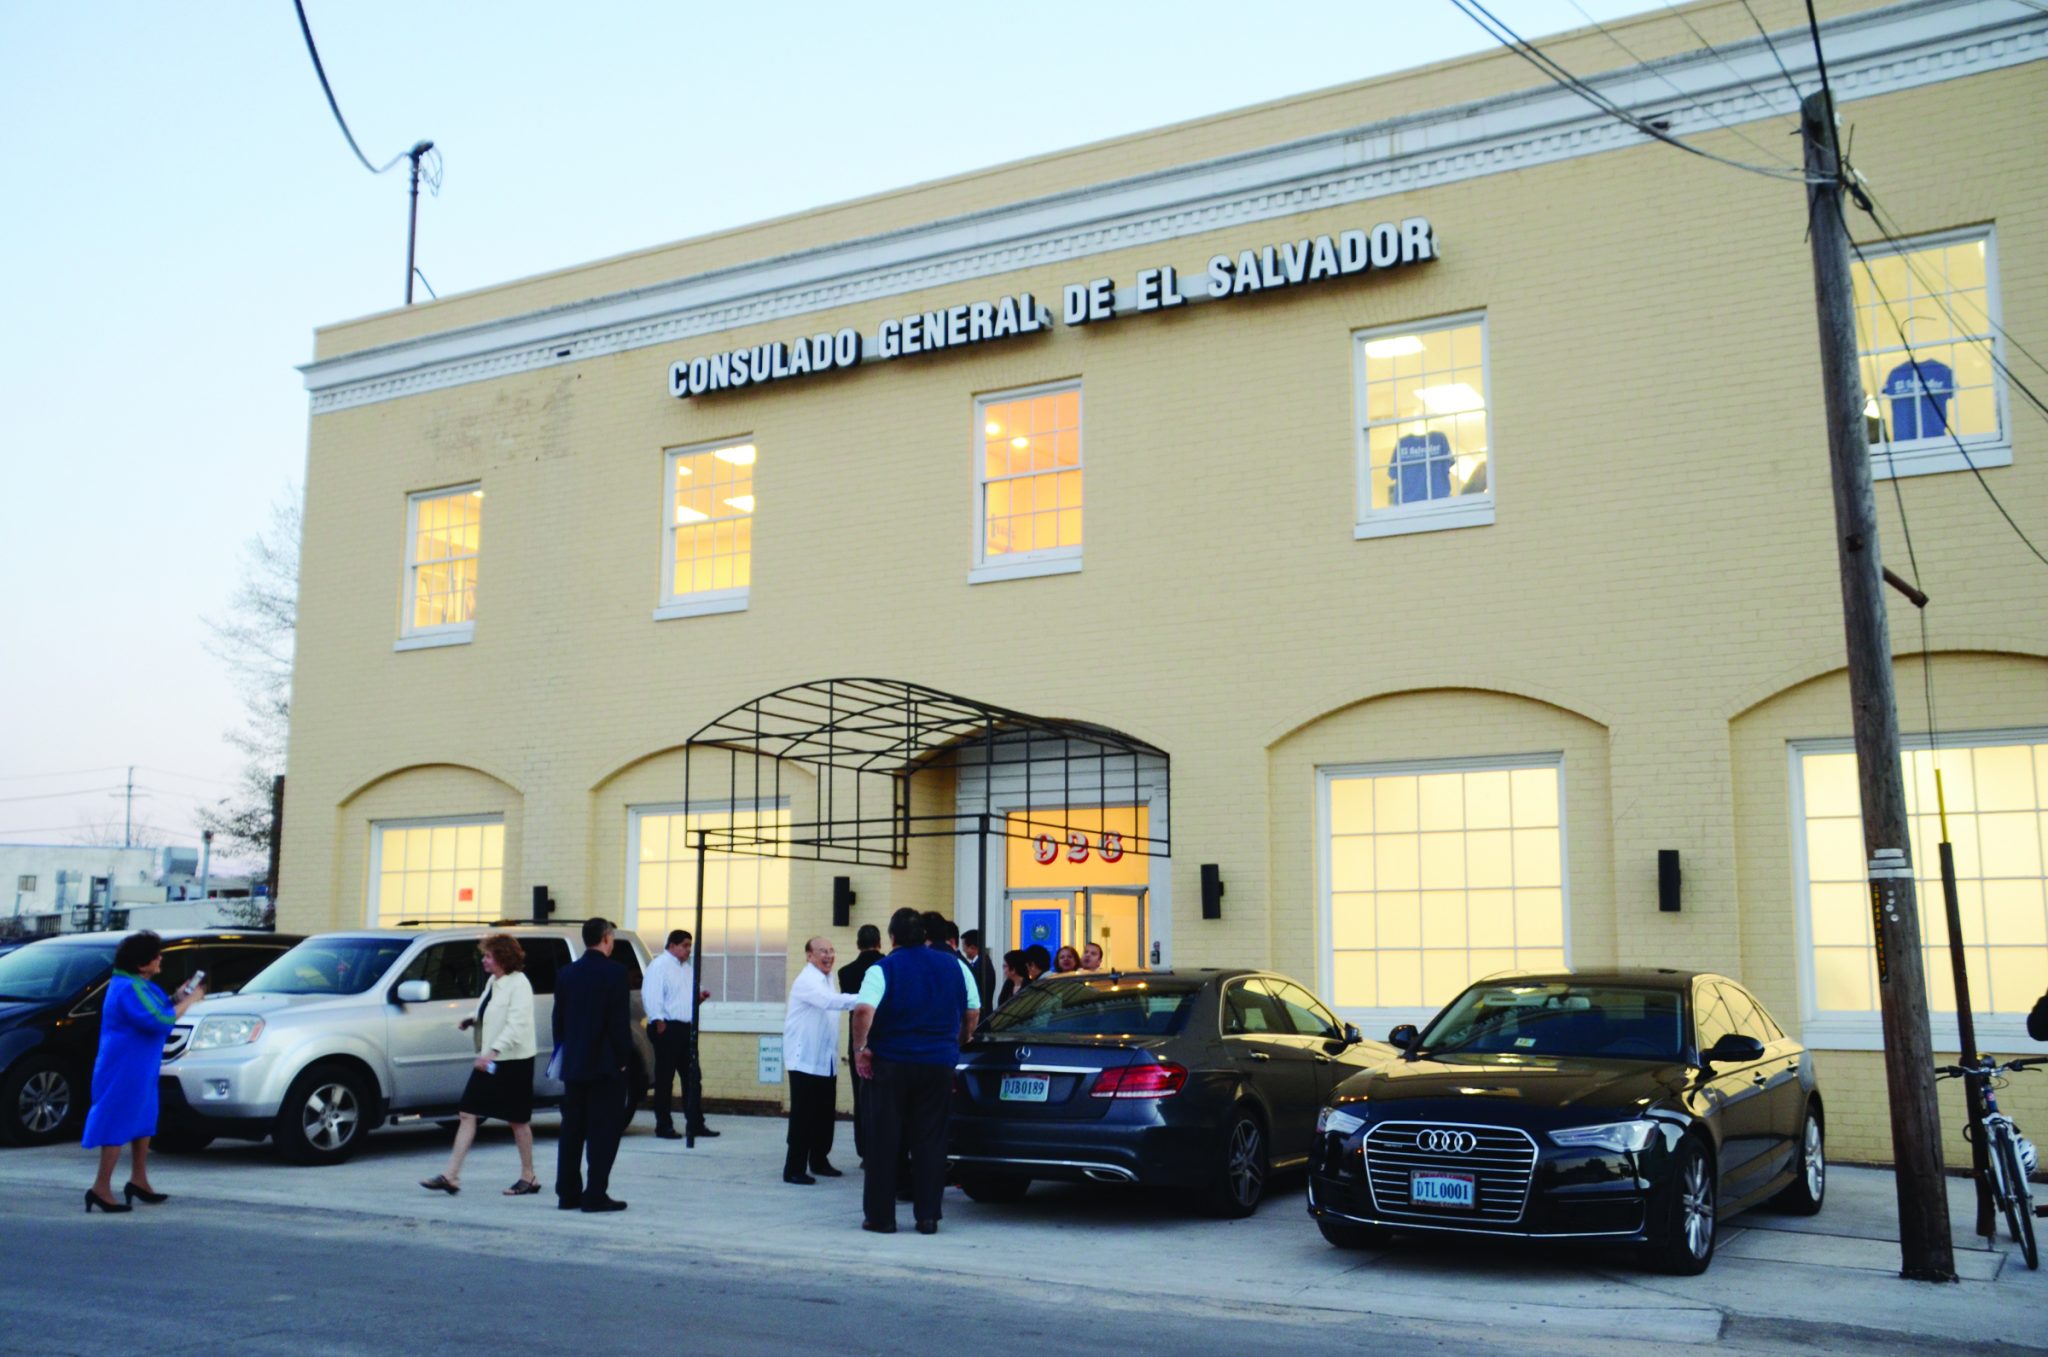 Reabren consulados de El Salvador en el DMV Washington Hispanic